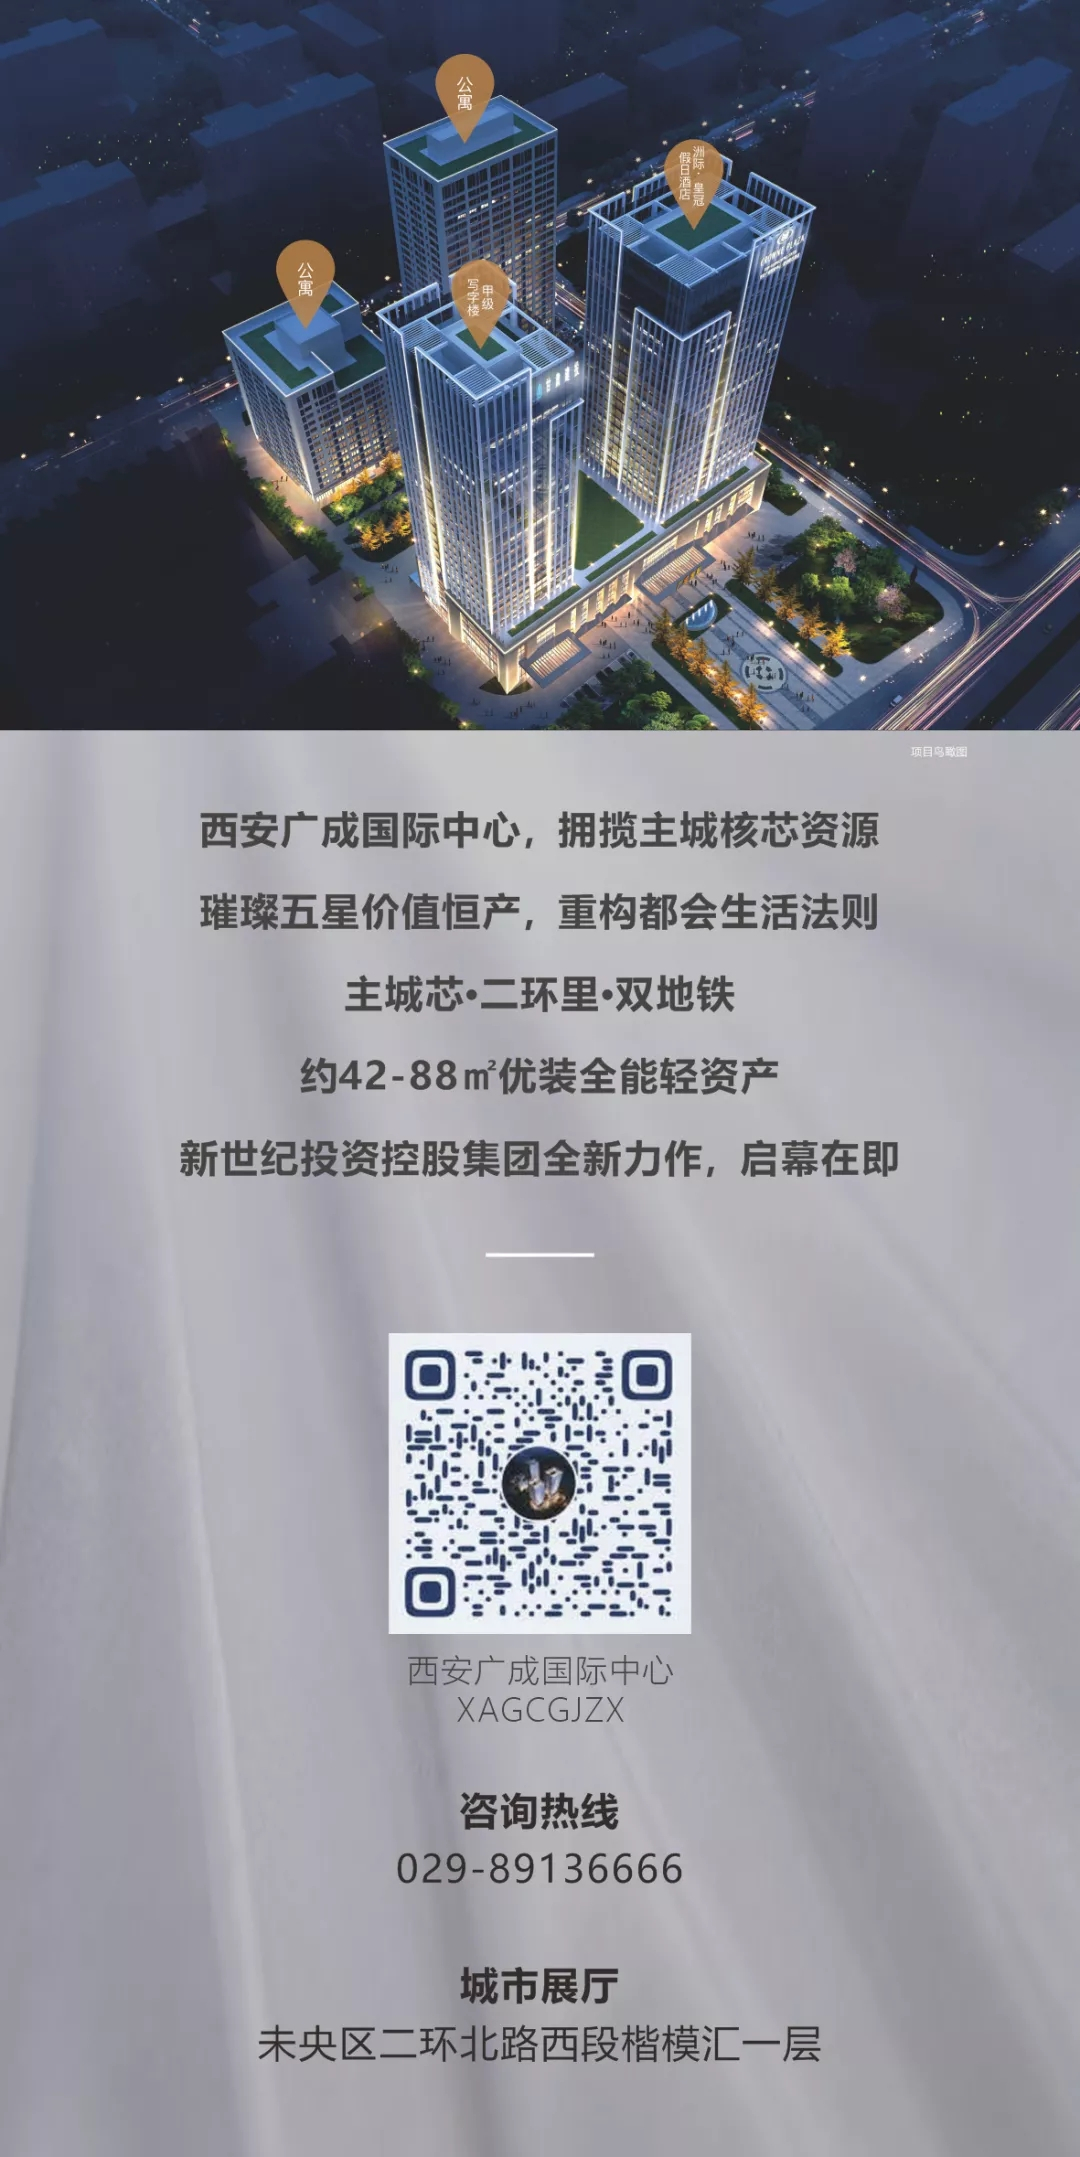 邀请函 | 西安广成国际中心“寓”见未来财富论坛